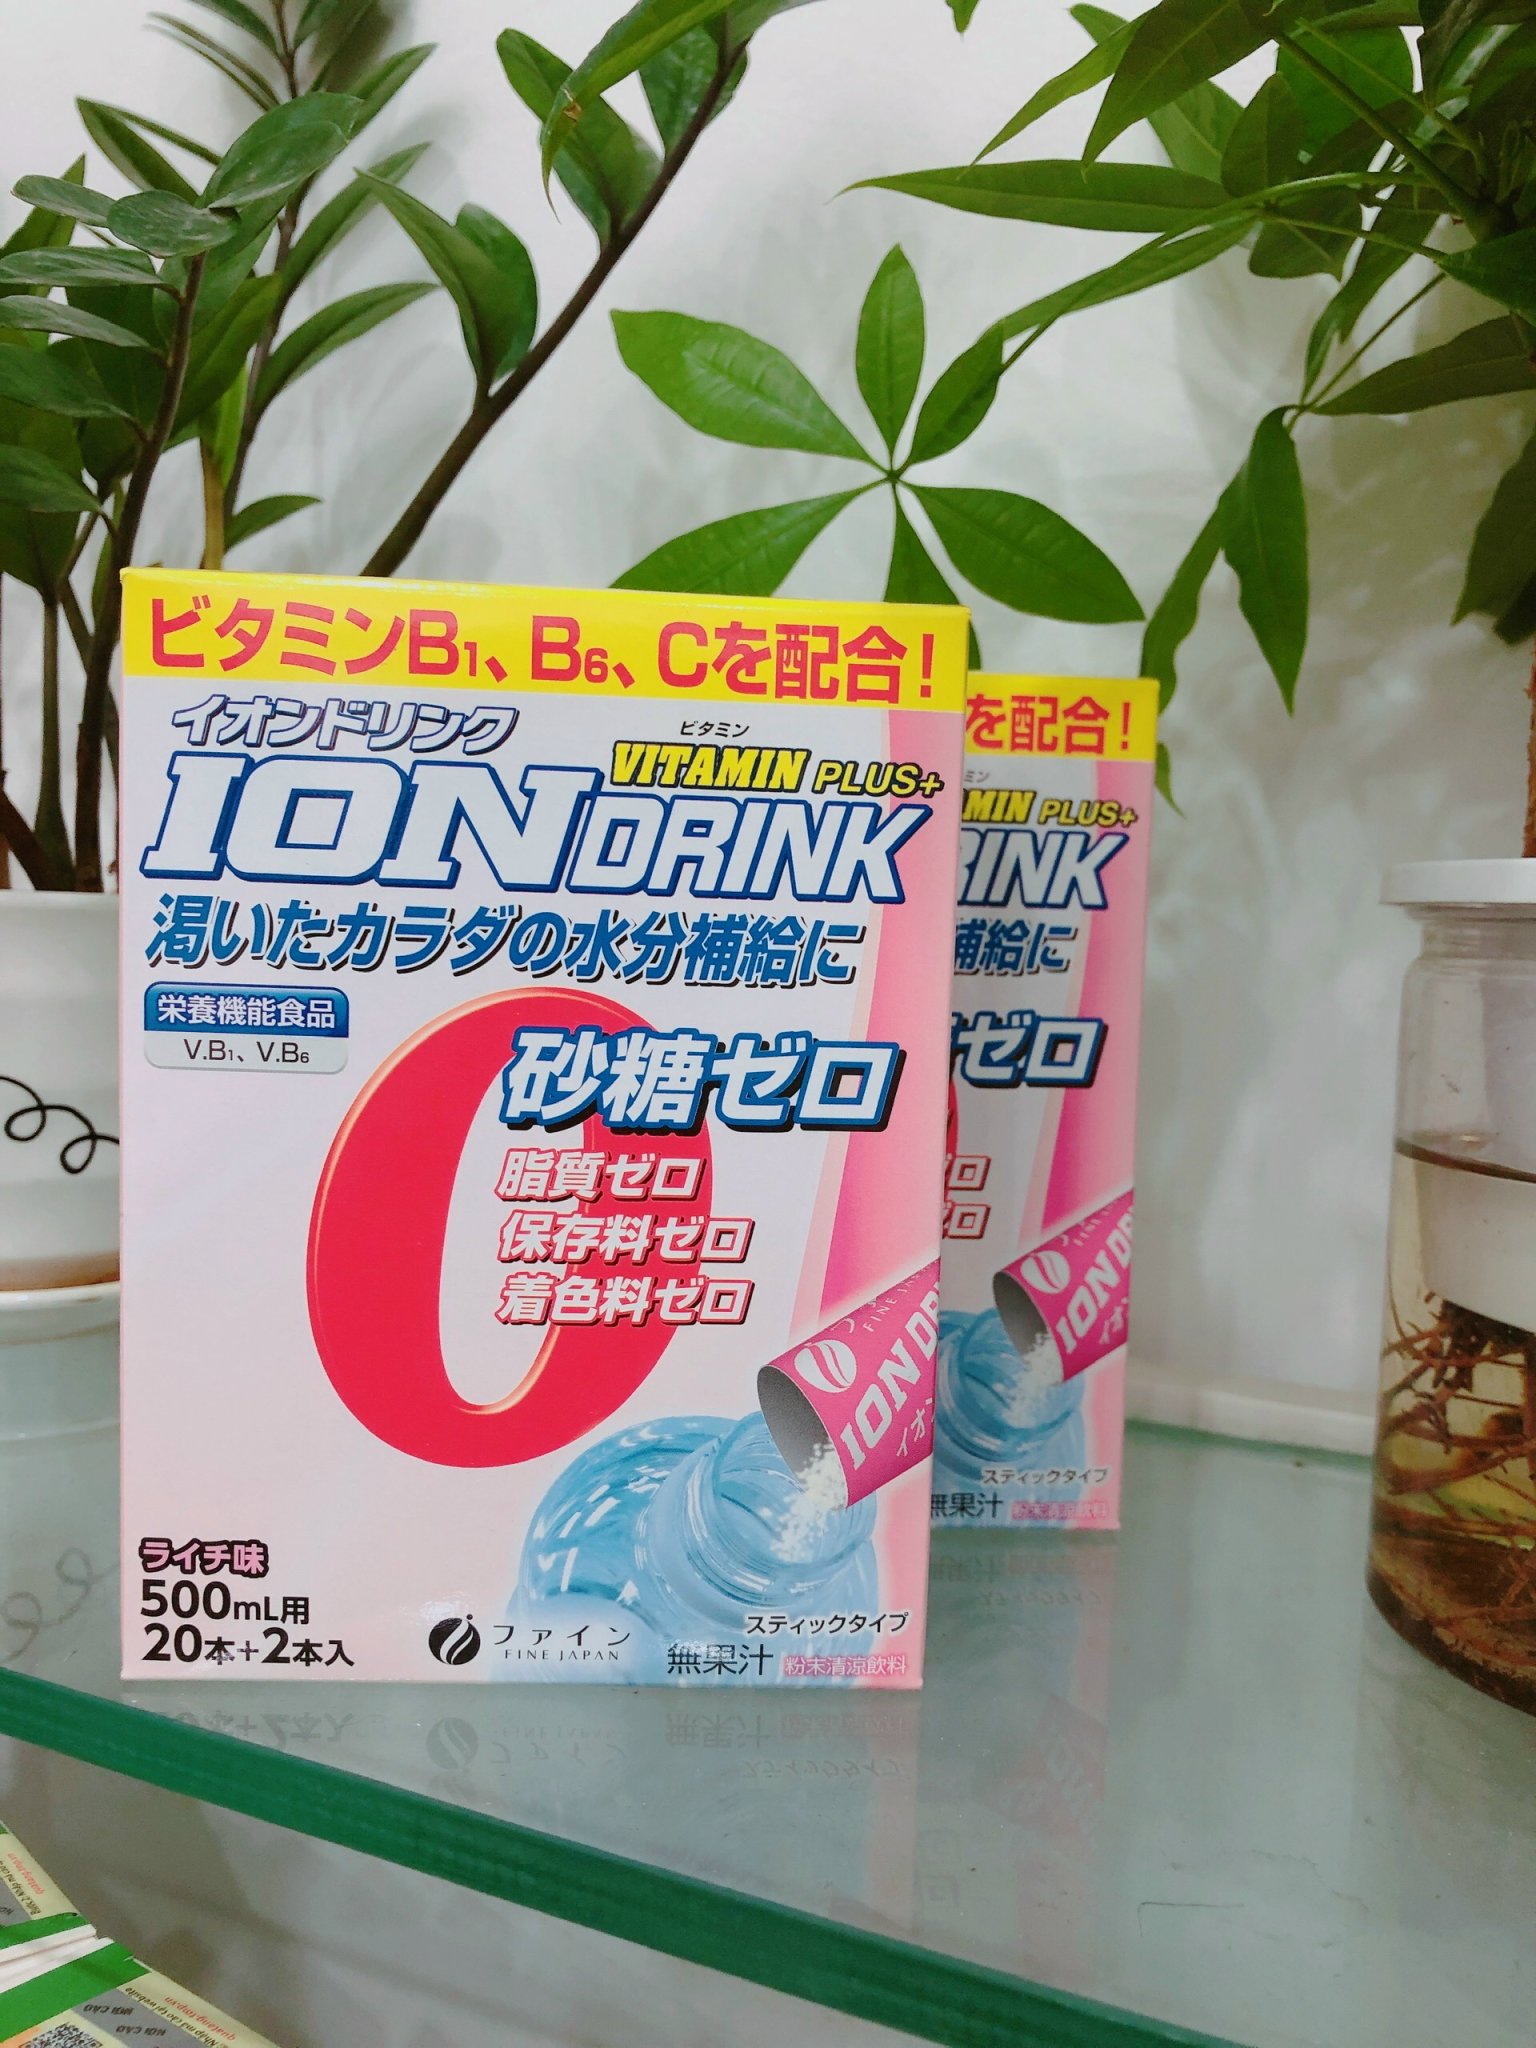 Ion Drink Nhật Bản - Bù nước và điện giải hộp 22 gói x 3.2g gói